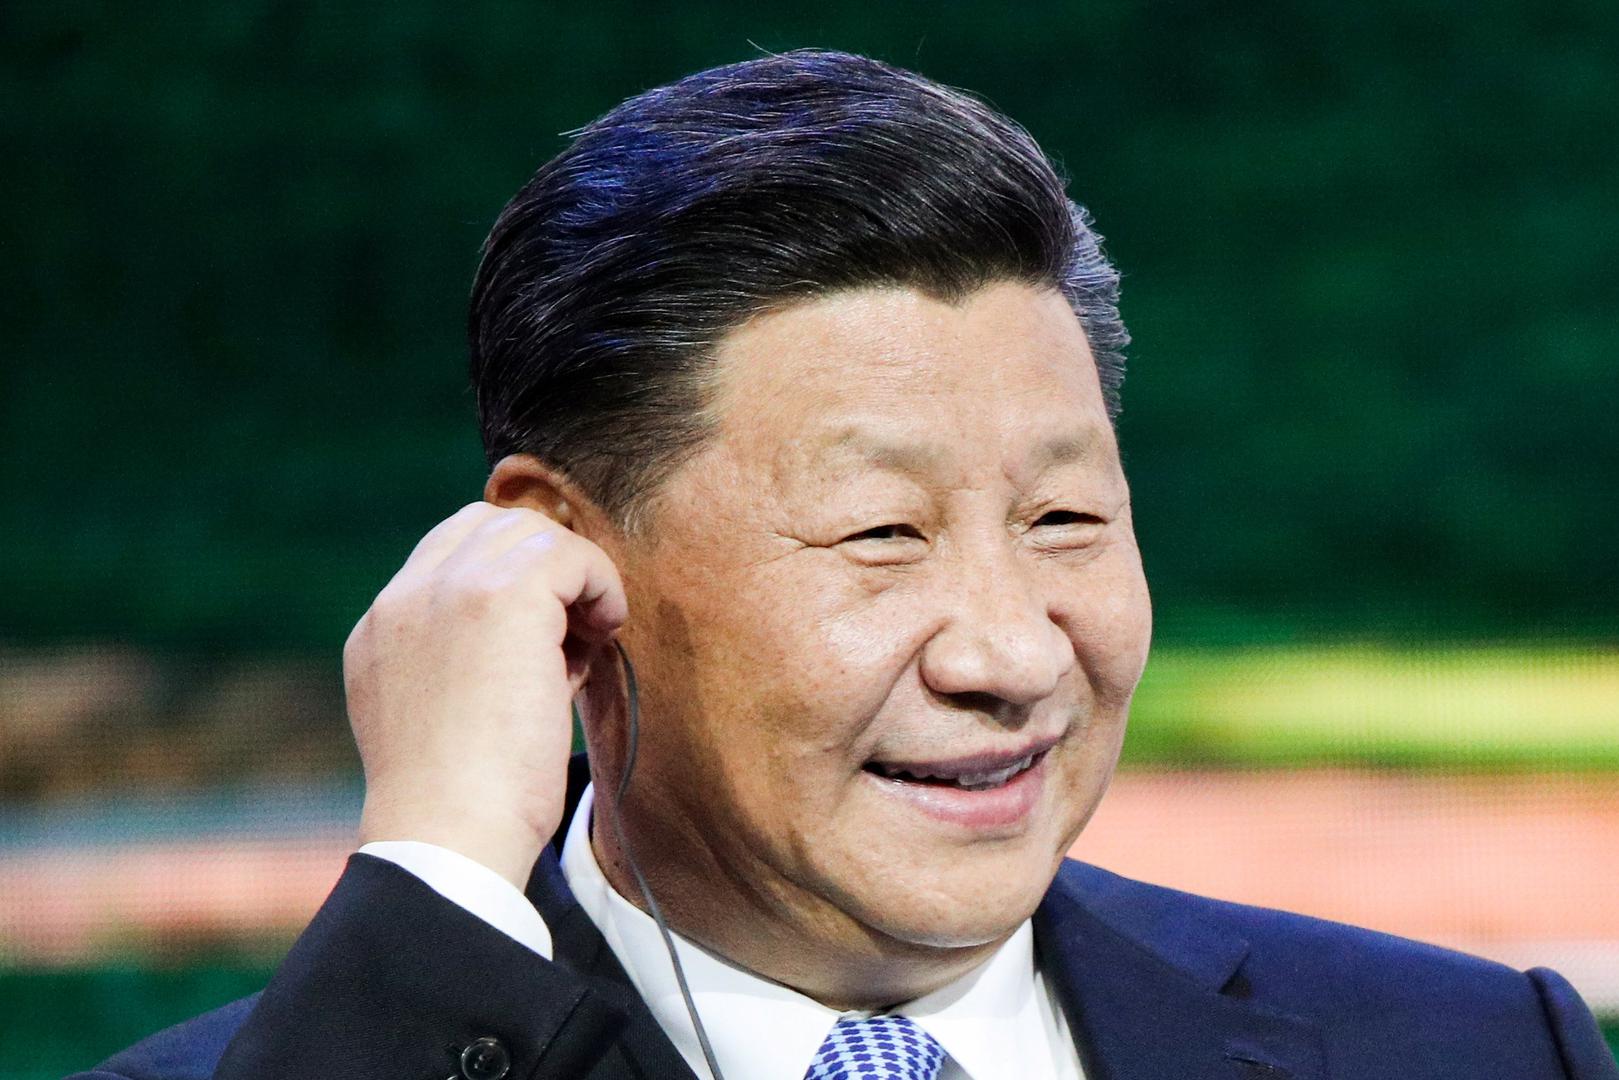 Otkako je Tsai Ing-wen postala predsjednica Tajvana, odnosi su se s Kinom zaoštrili pa je i kineski predsjednik Xi Jinping u ofenzivi